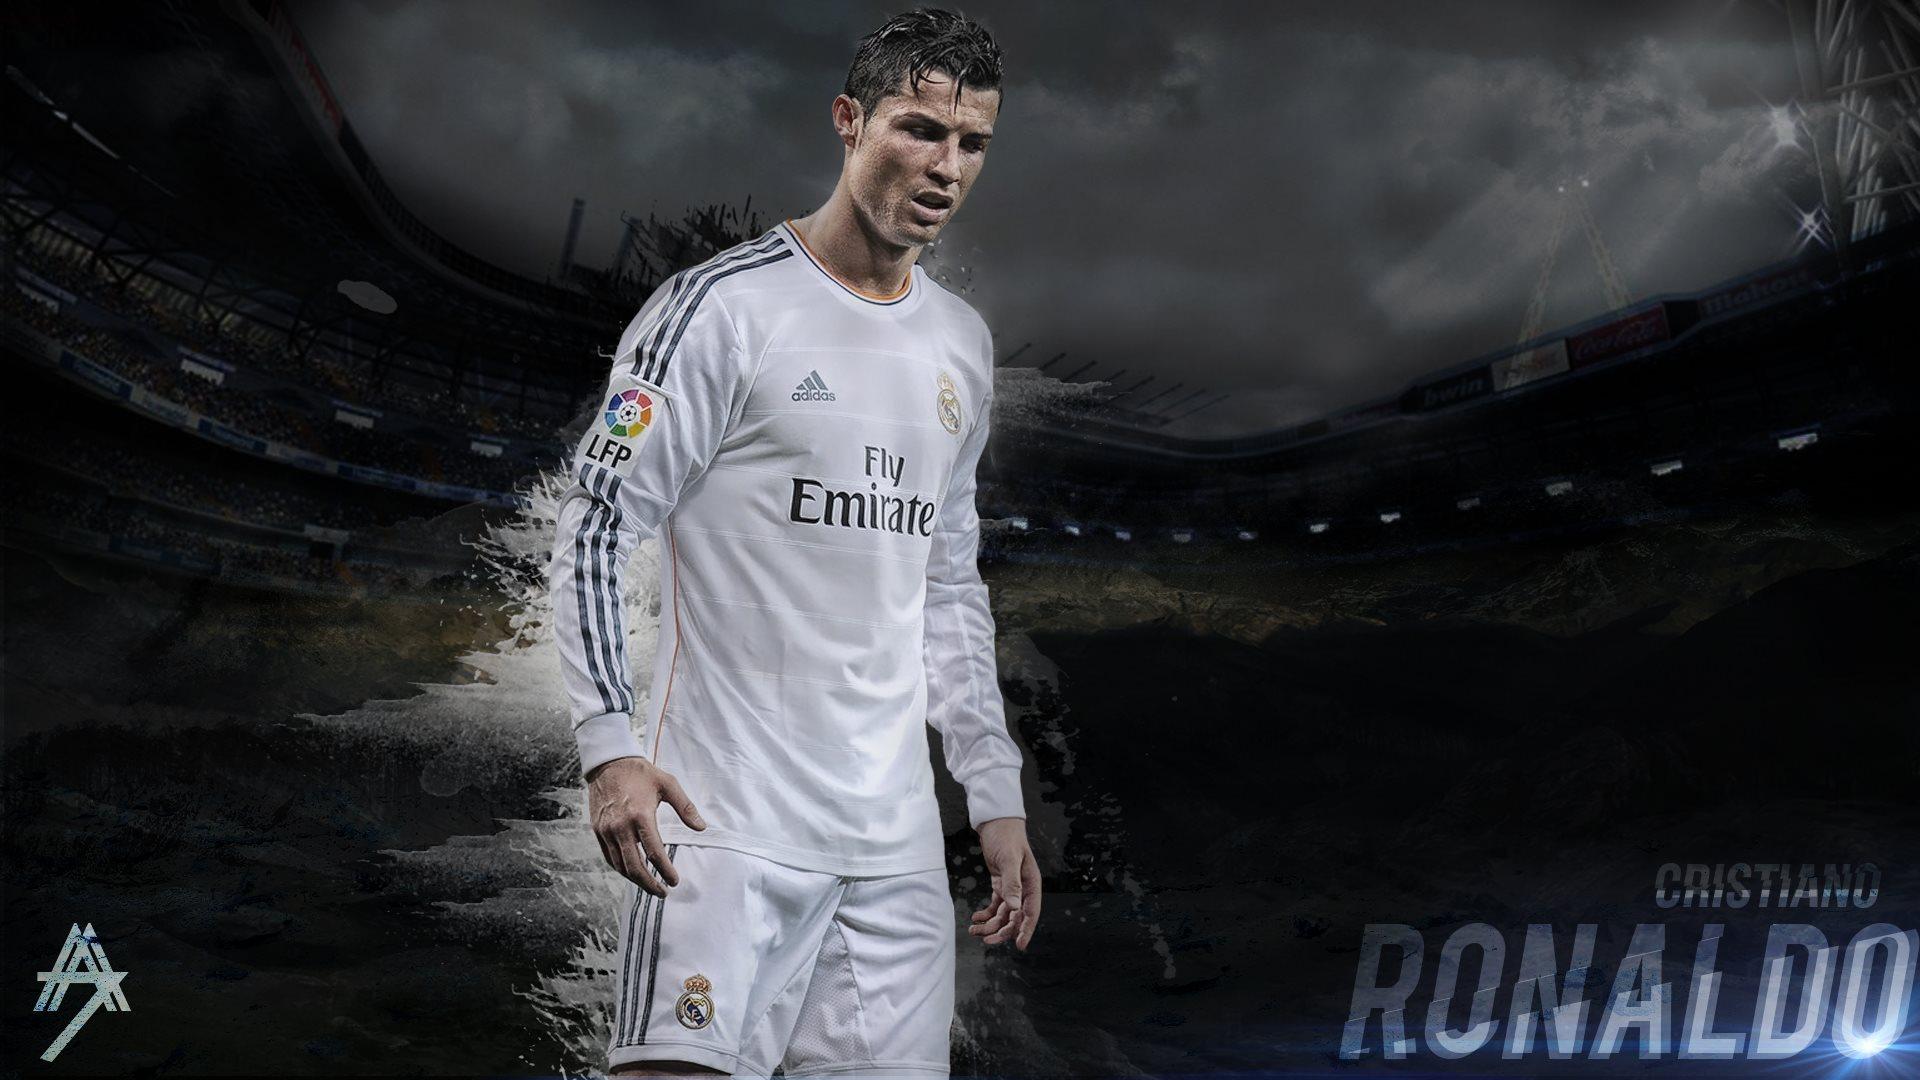 Cristiano Ronaldo Wallpaper. Cristiano